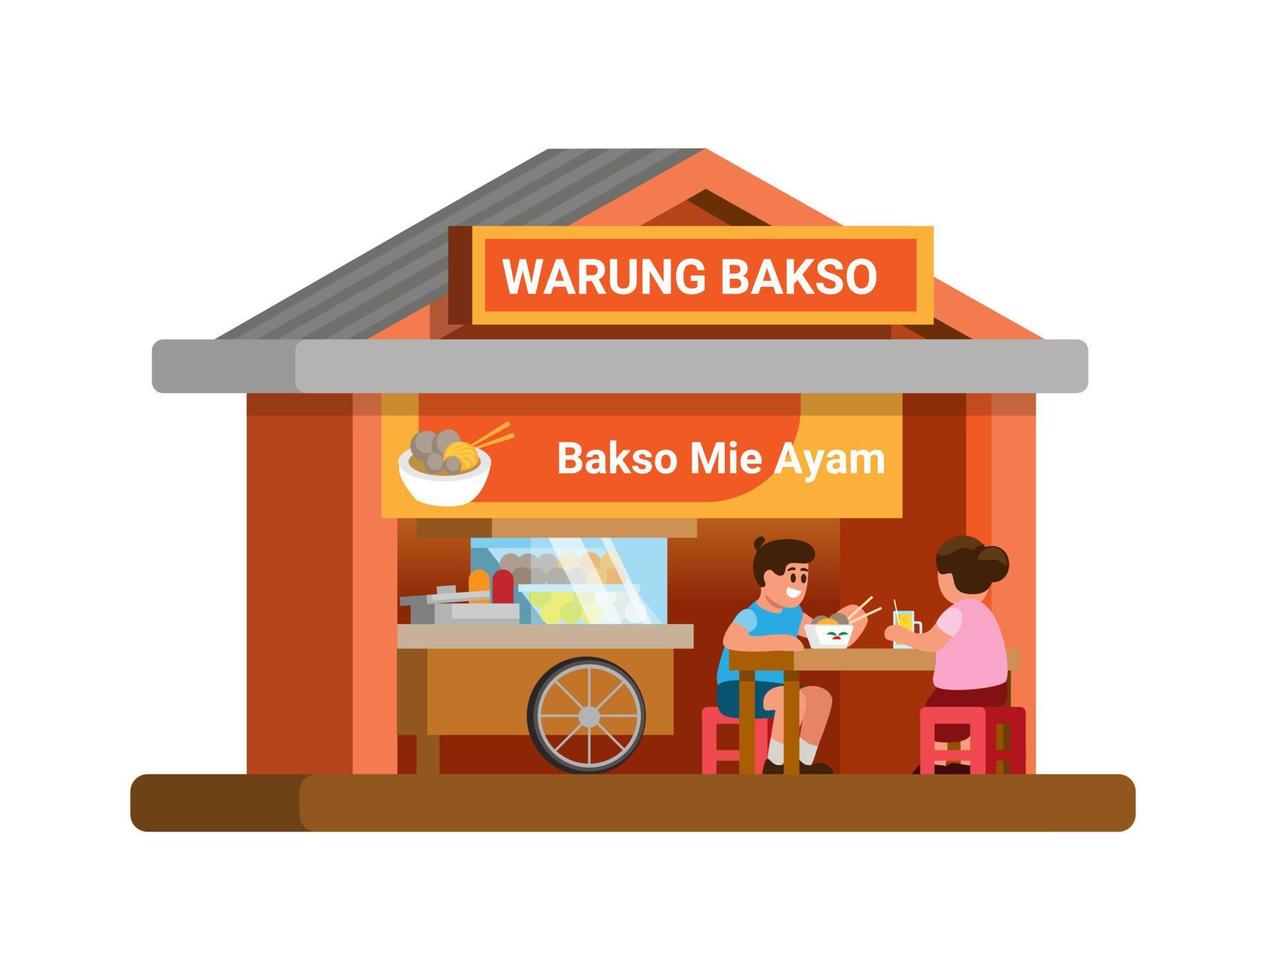 warung bakso mie ayam alias polpetta e pollo spaghetto ristorante strada cibo edificio piatto cartone animato illustrazione vettore